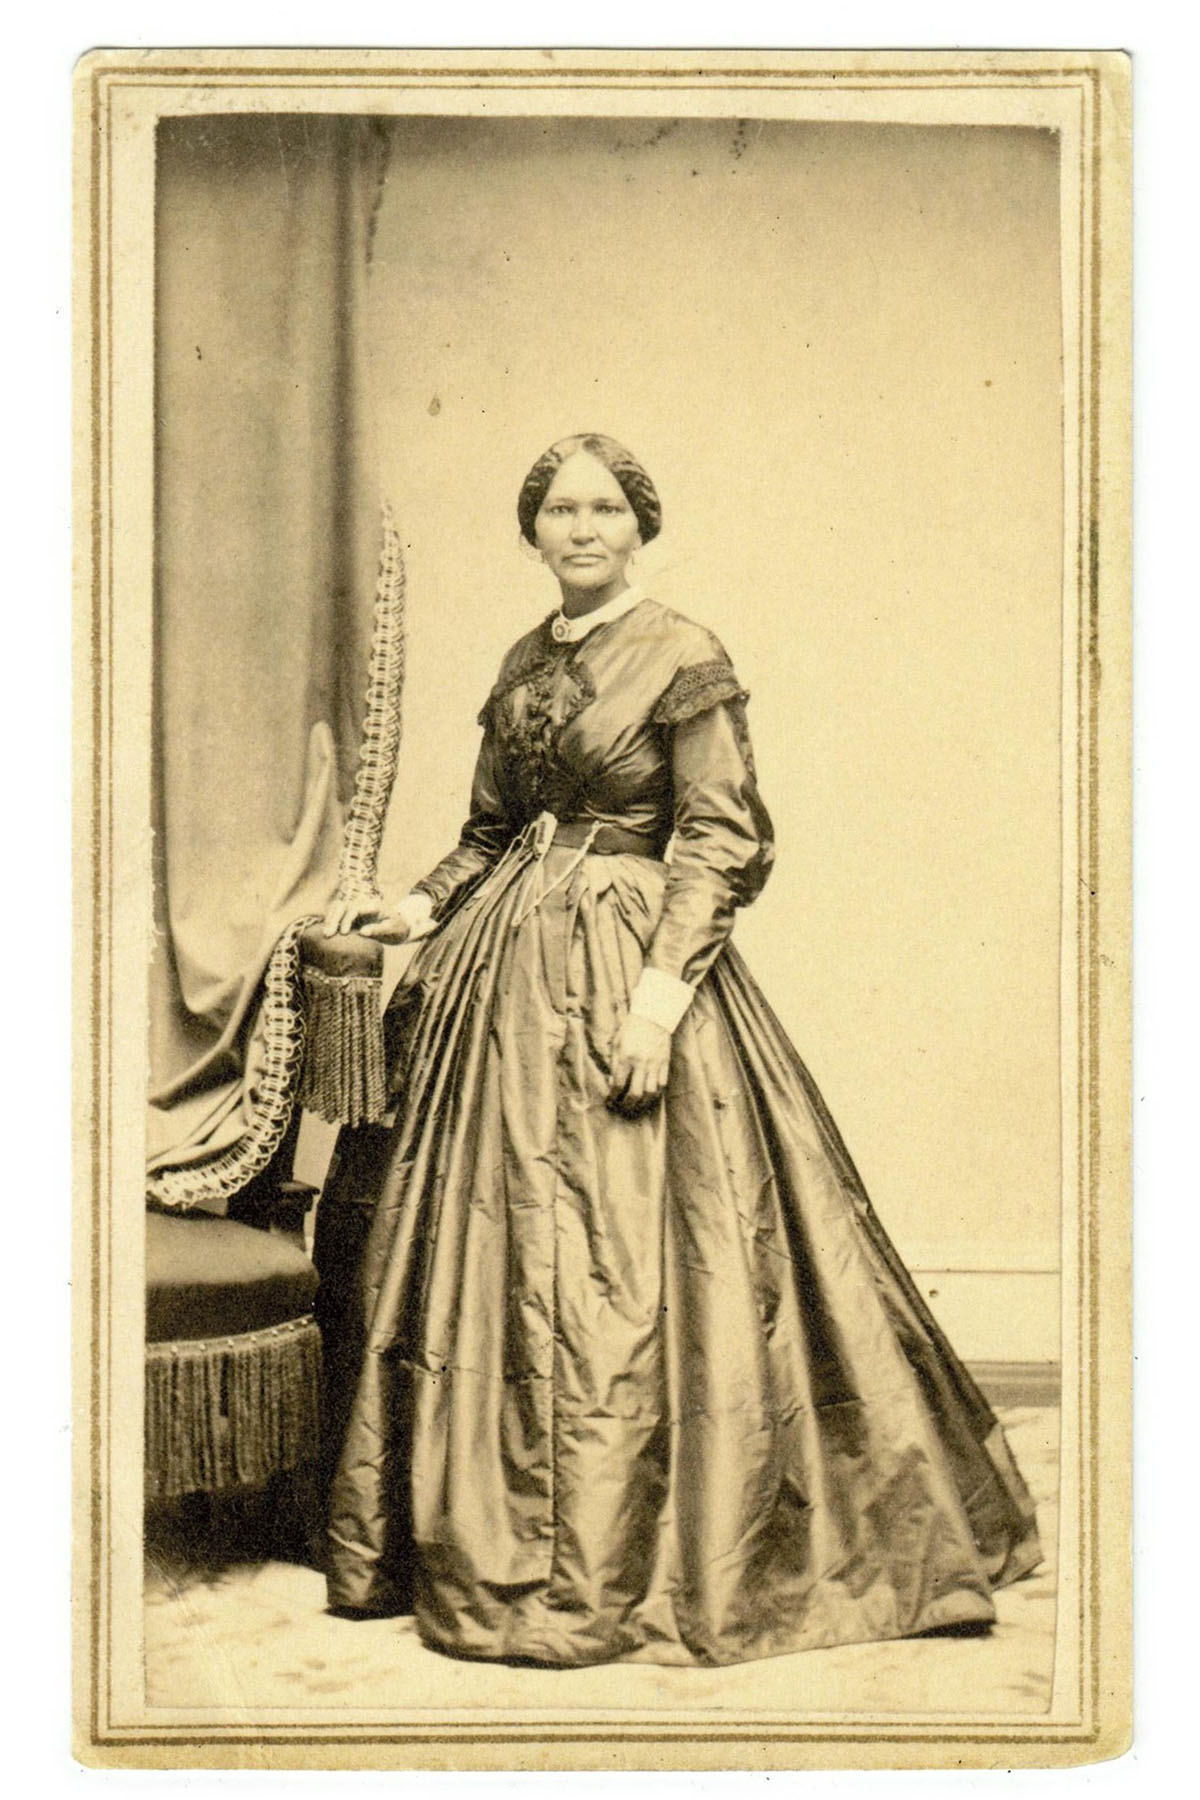 Portrait of Elizabeth Keckley in a long dress.